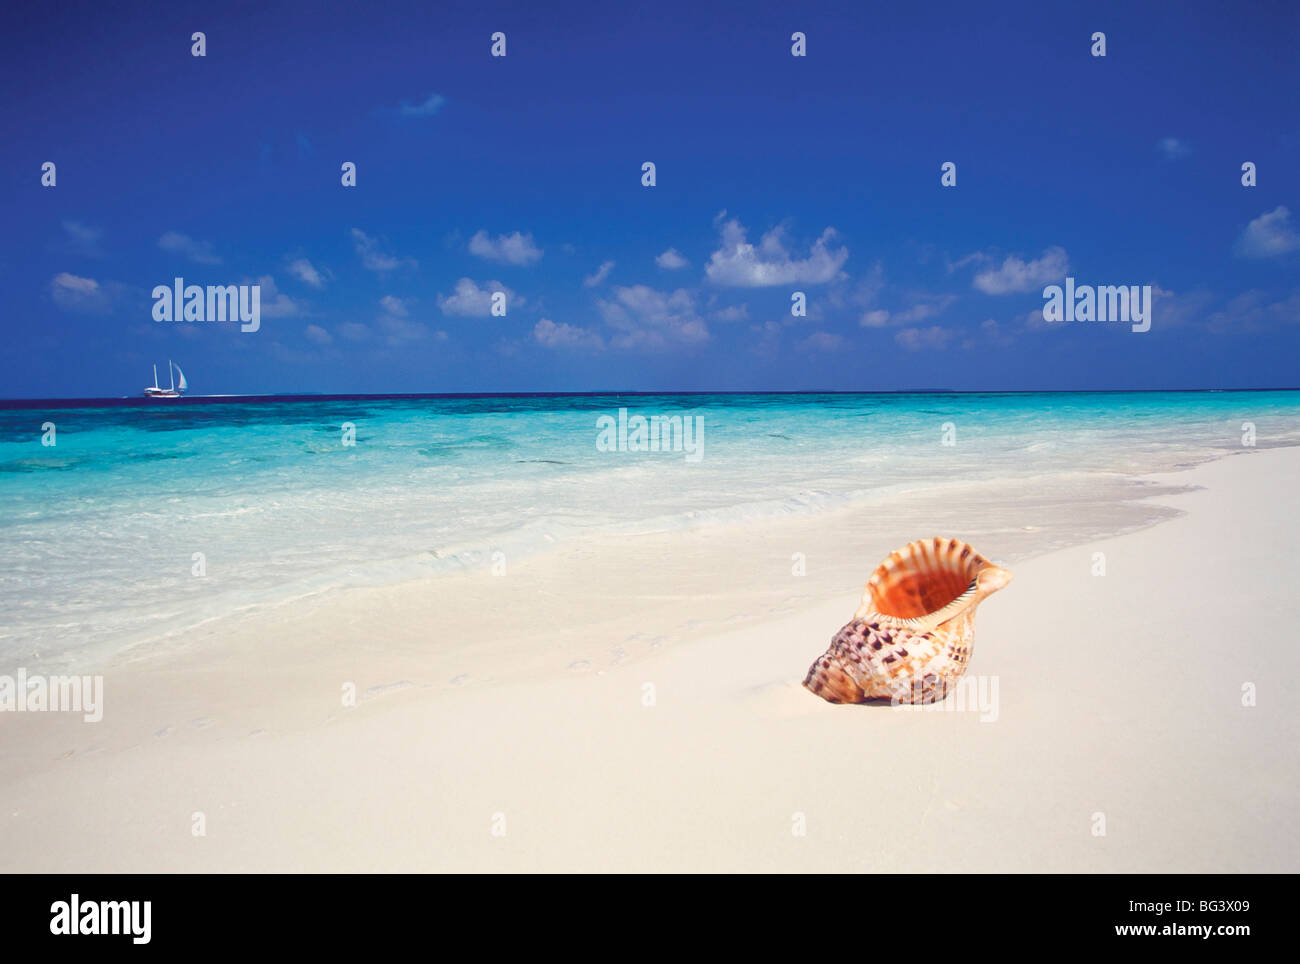 Guscio su una spiaggia deserta, Maldive, Oceano Indiano, Asia Foto Stock